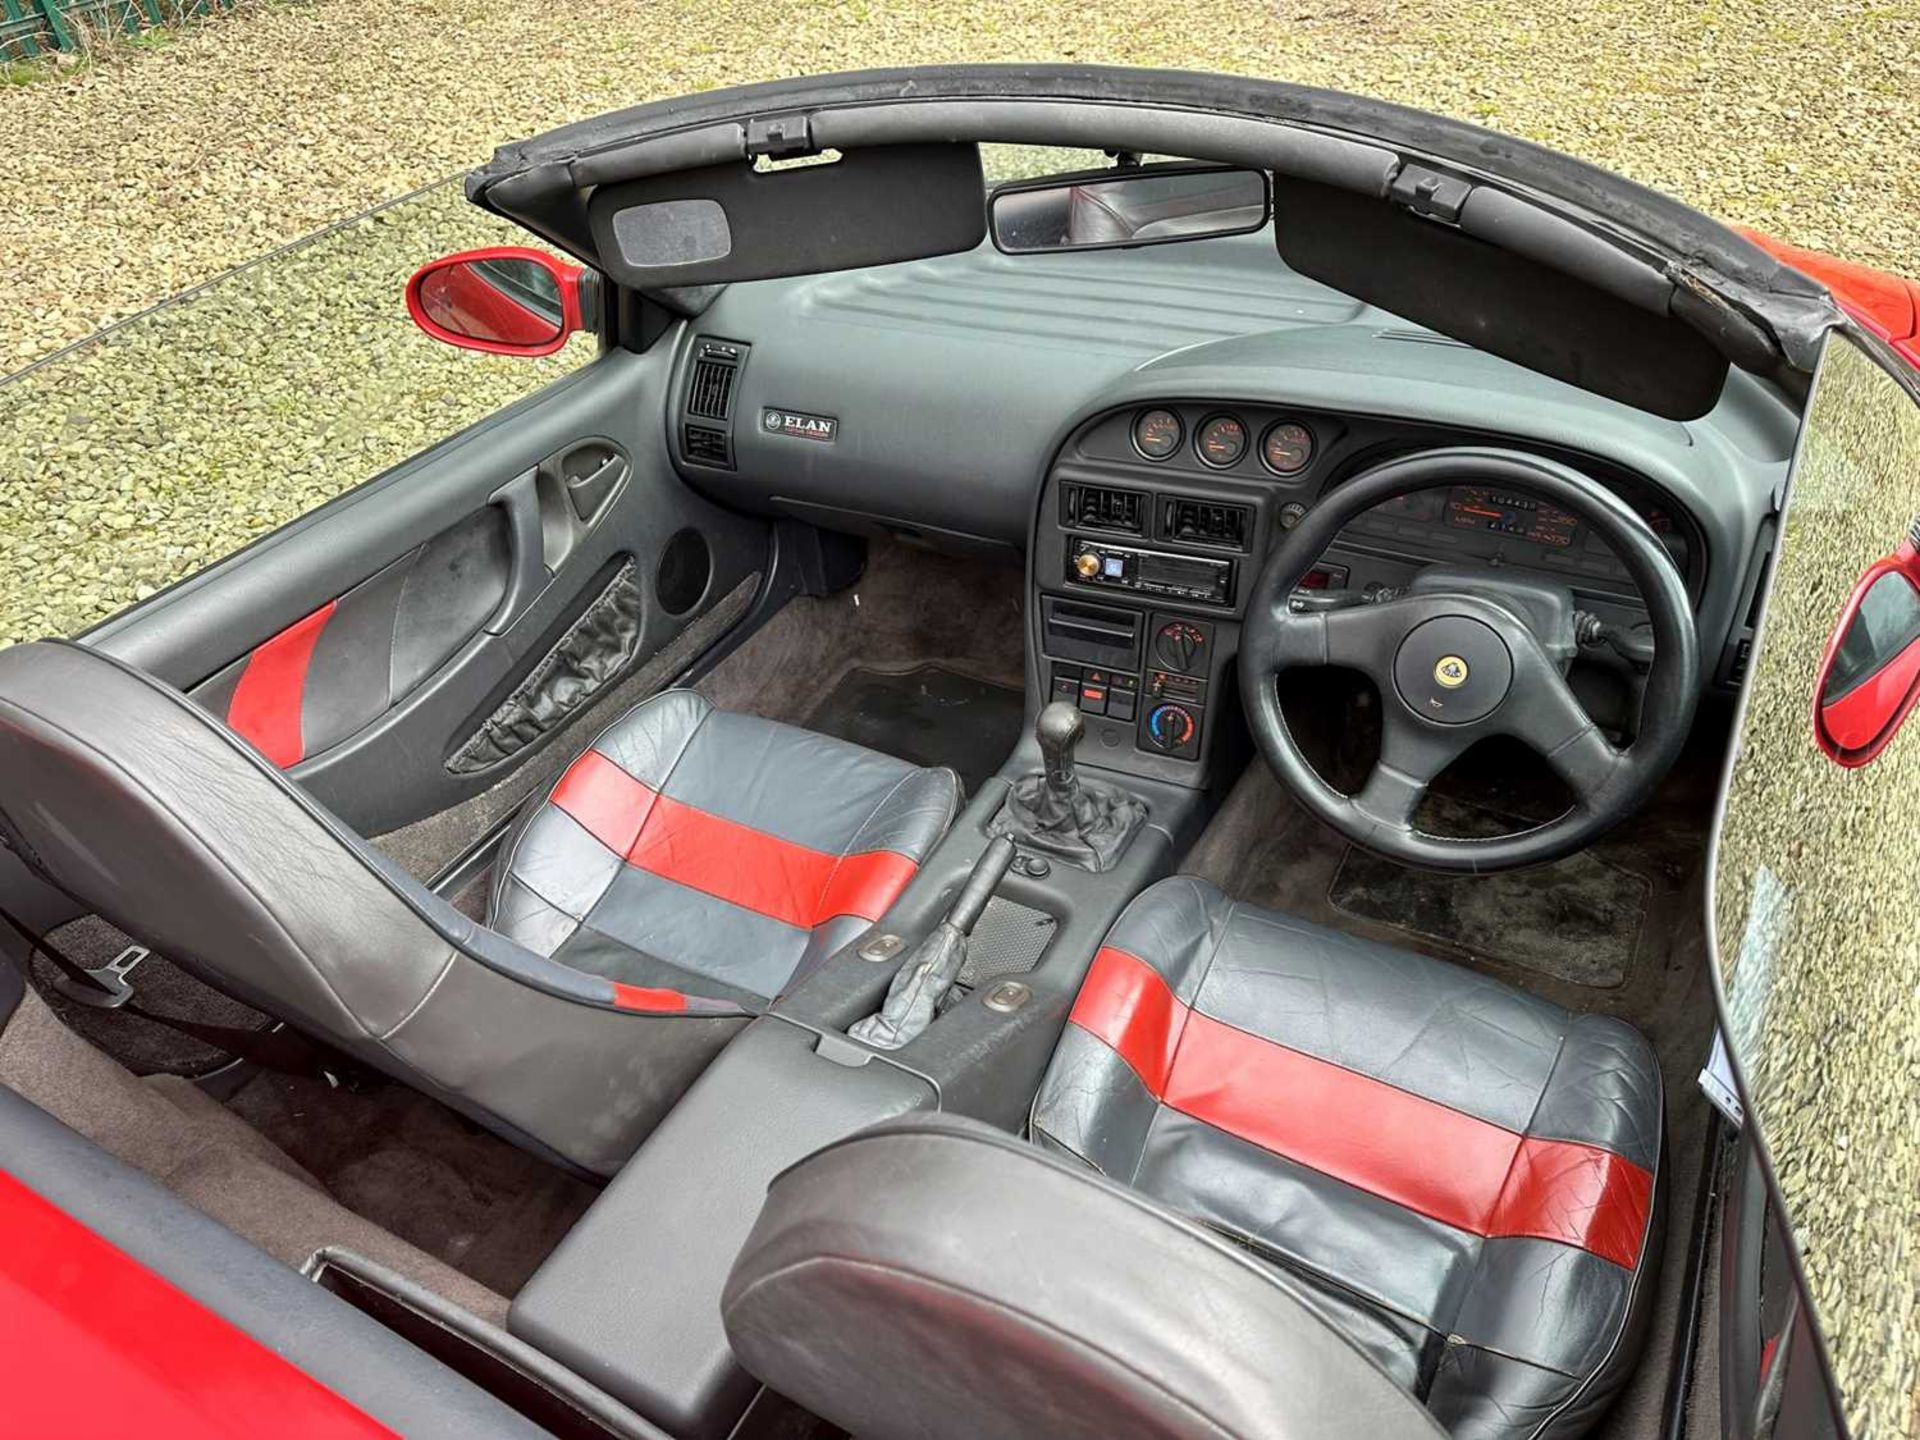 1991 Lotus Elan M100 SE Turbo - Image 14 of 25